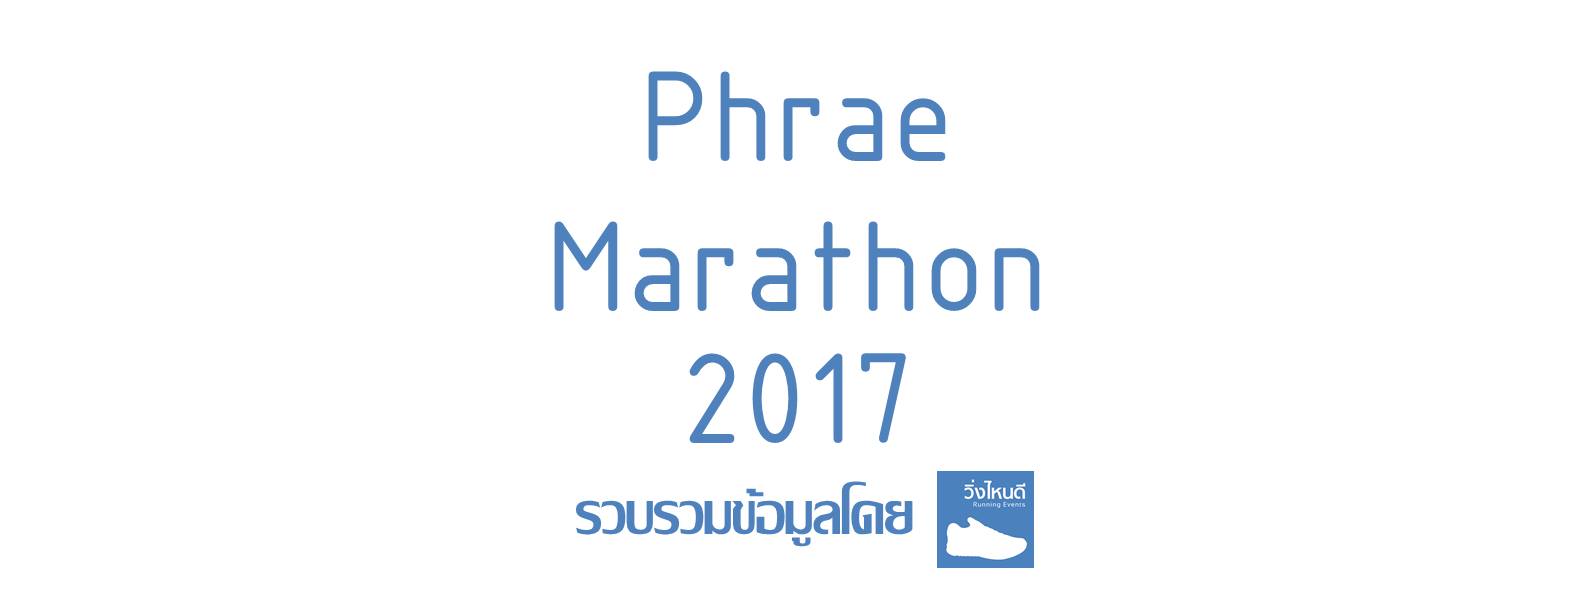 Phrae Marathon 2017